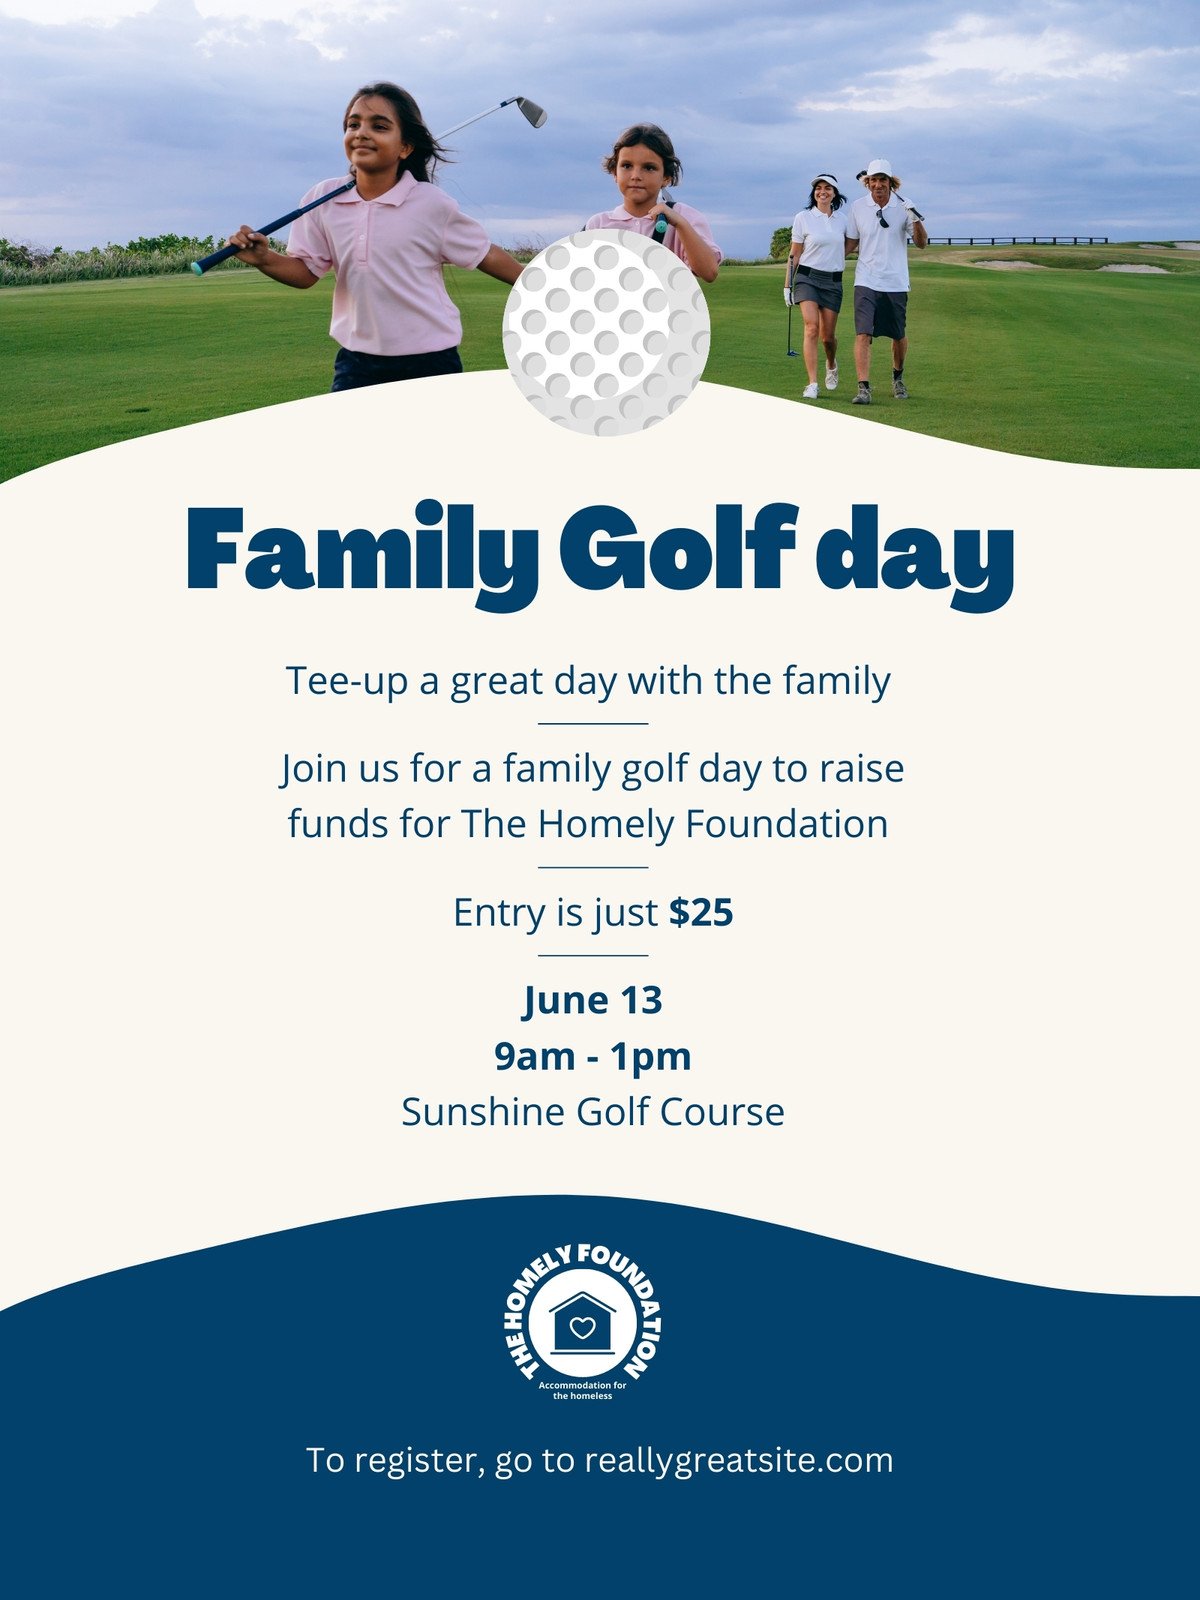 BUSINESS GOLF EVENT FLYER TEMPLATE  Golf event, Golf poster, Event flyer  templates